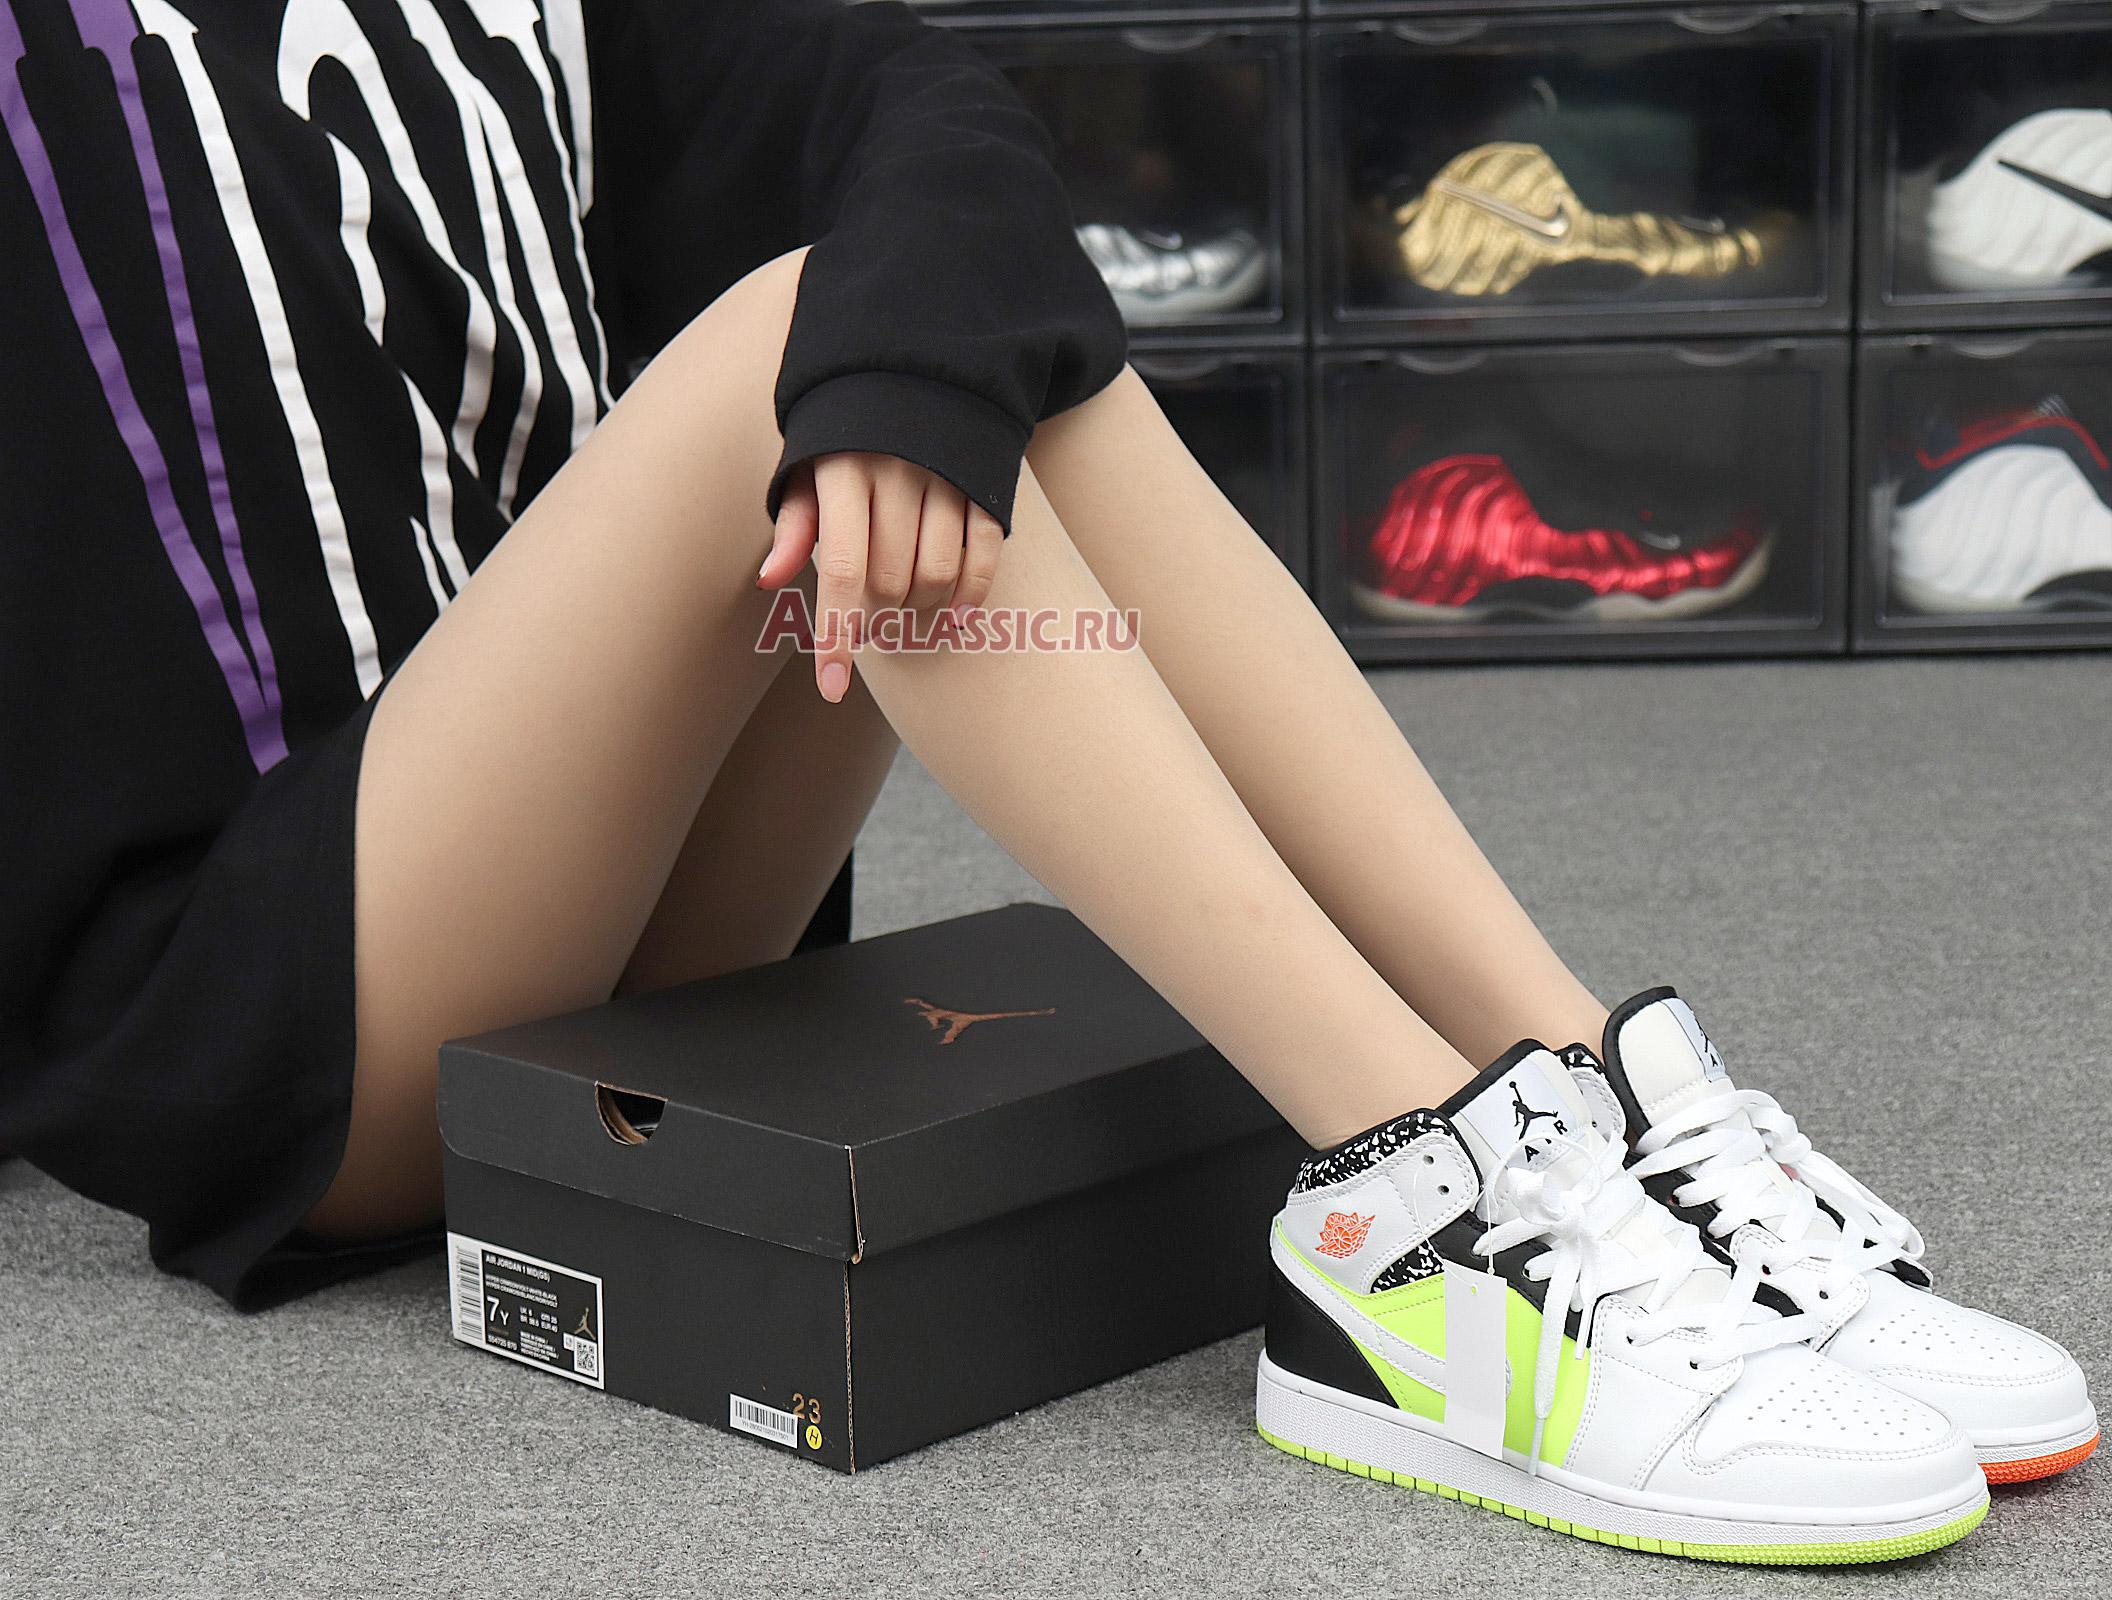 Air Jordan 1 Mid Notebook 554725-870 White/Orange/Green/Black Sneakers